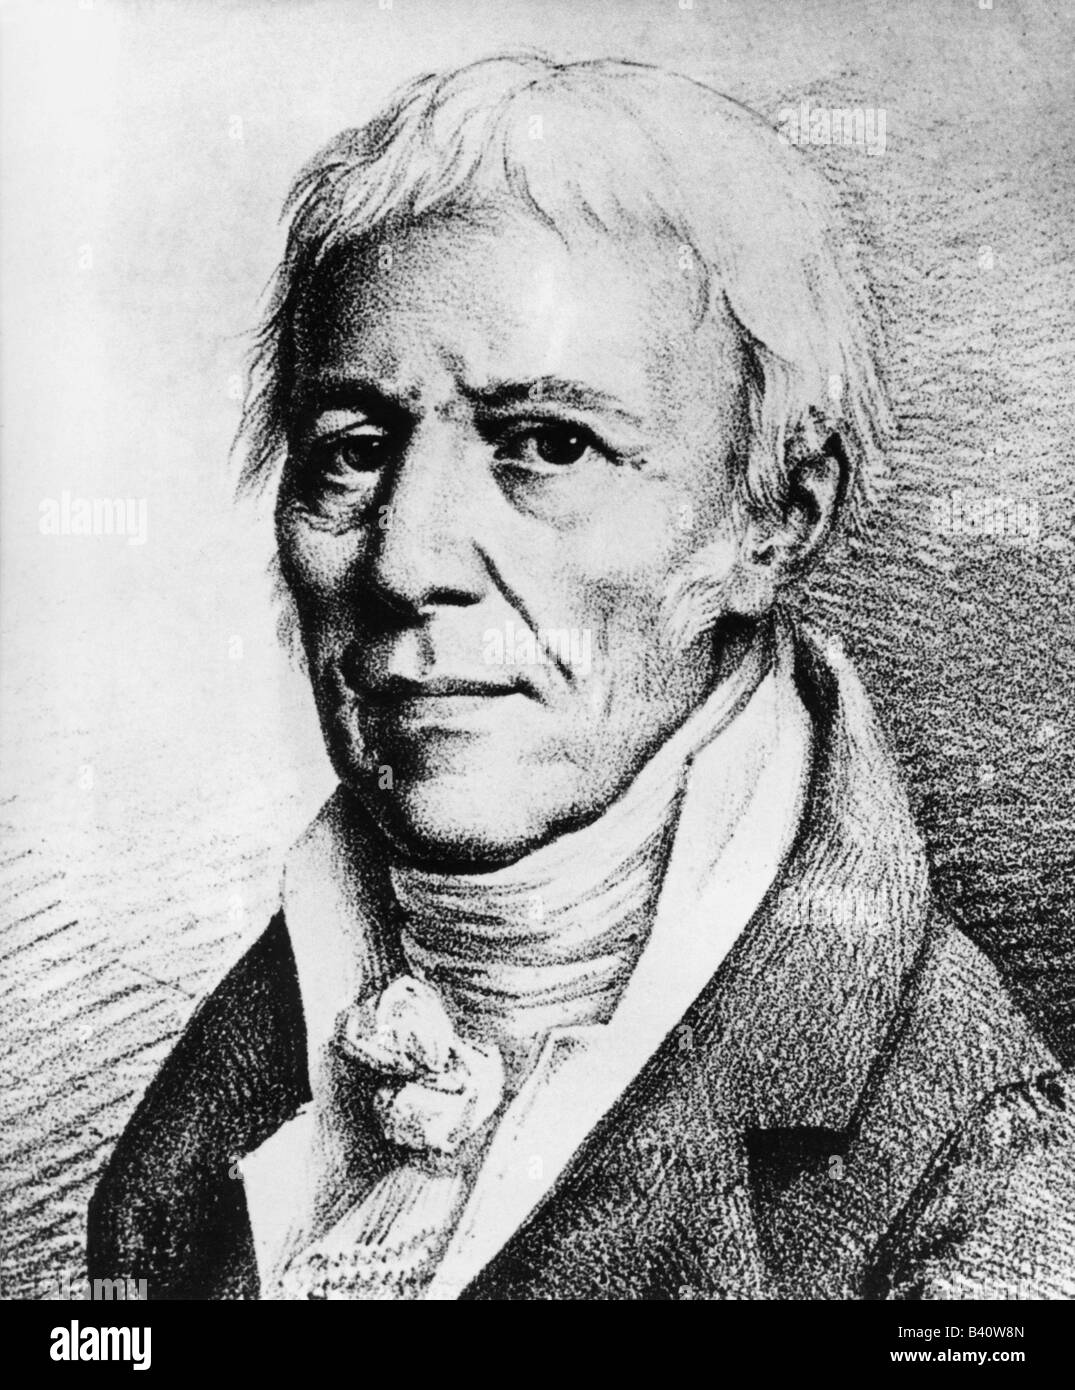 Lamarck, Jean Baptiste de Monet, Chevalier de, 1.8.1744 - 18.12.1829,  French scientist, portrait, engraving by Louis Leopold Boilly, 1821 Stock  Photo - Alamy